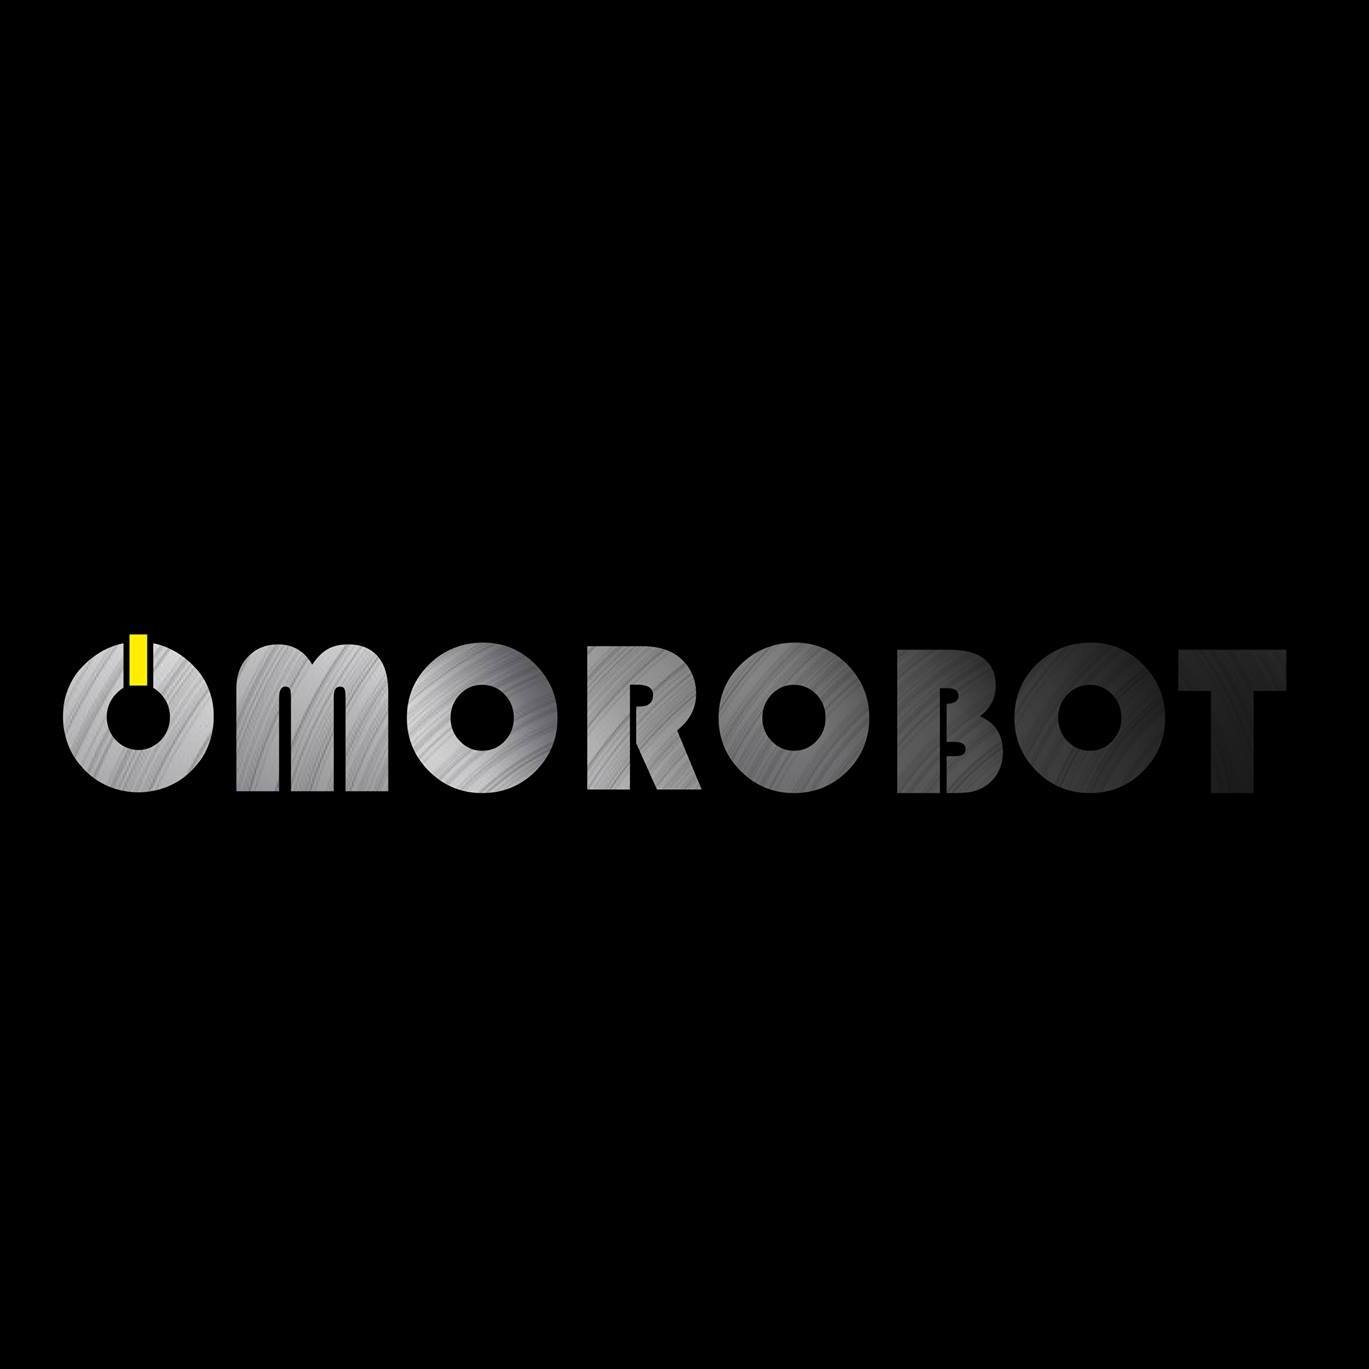 Omorobot, Inc.